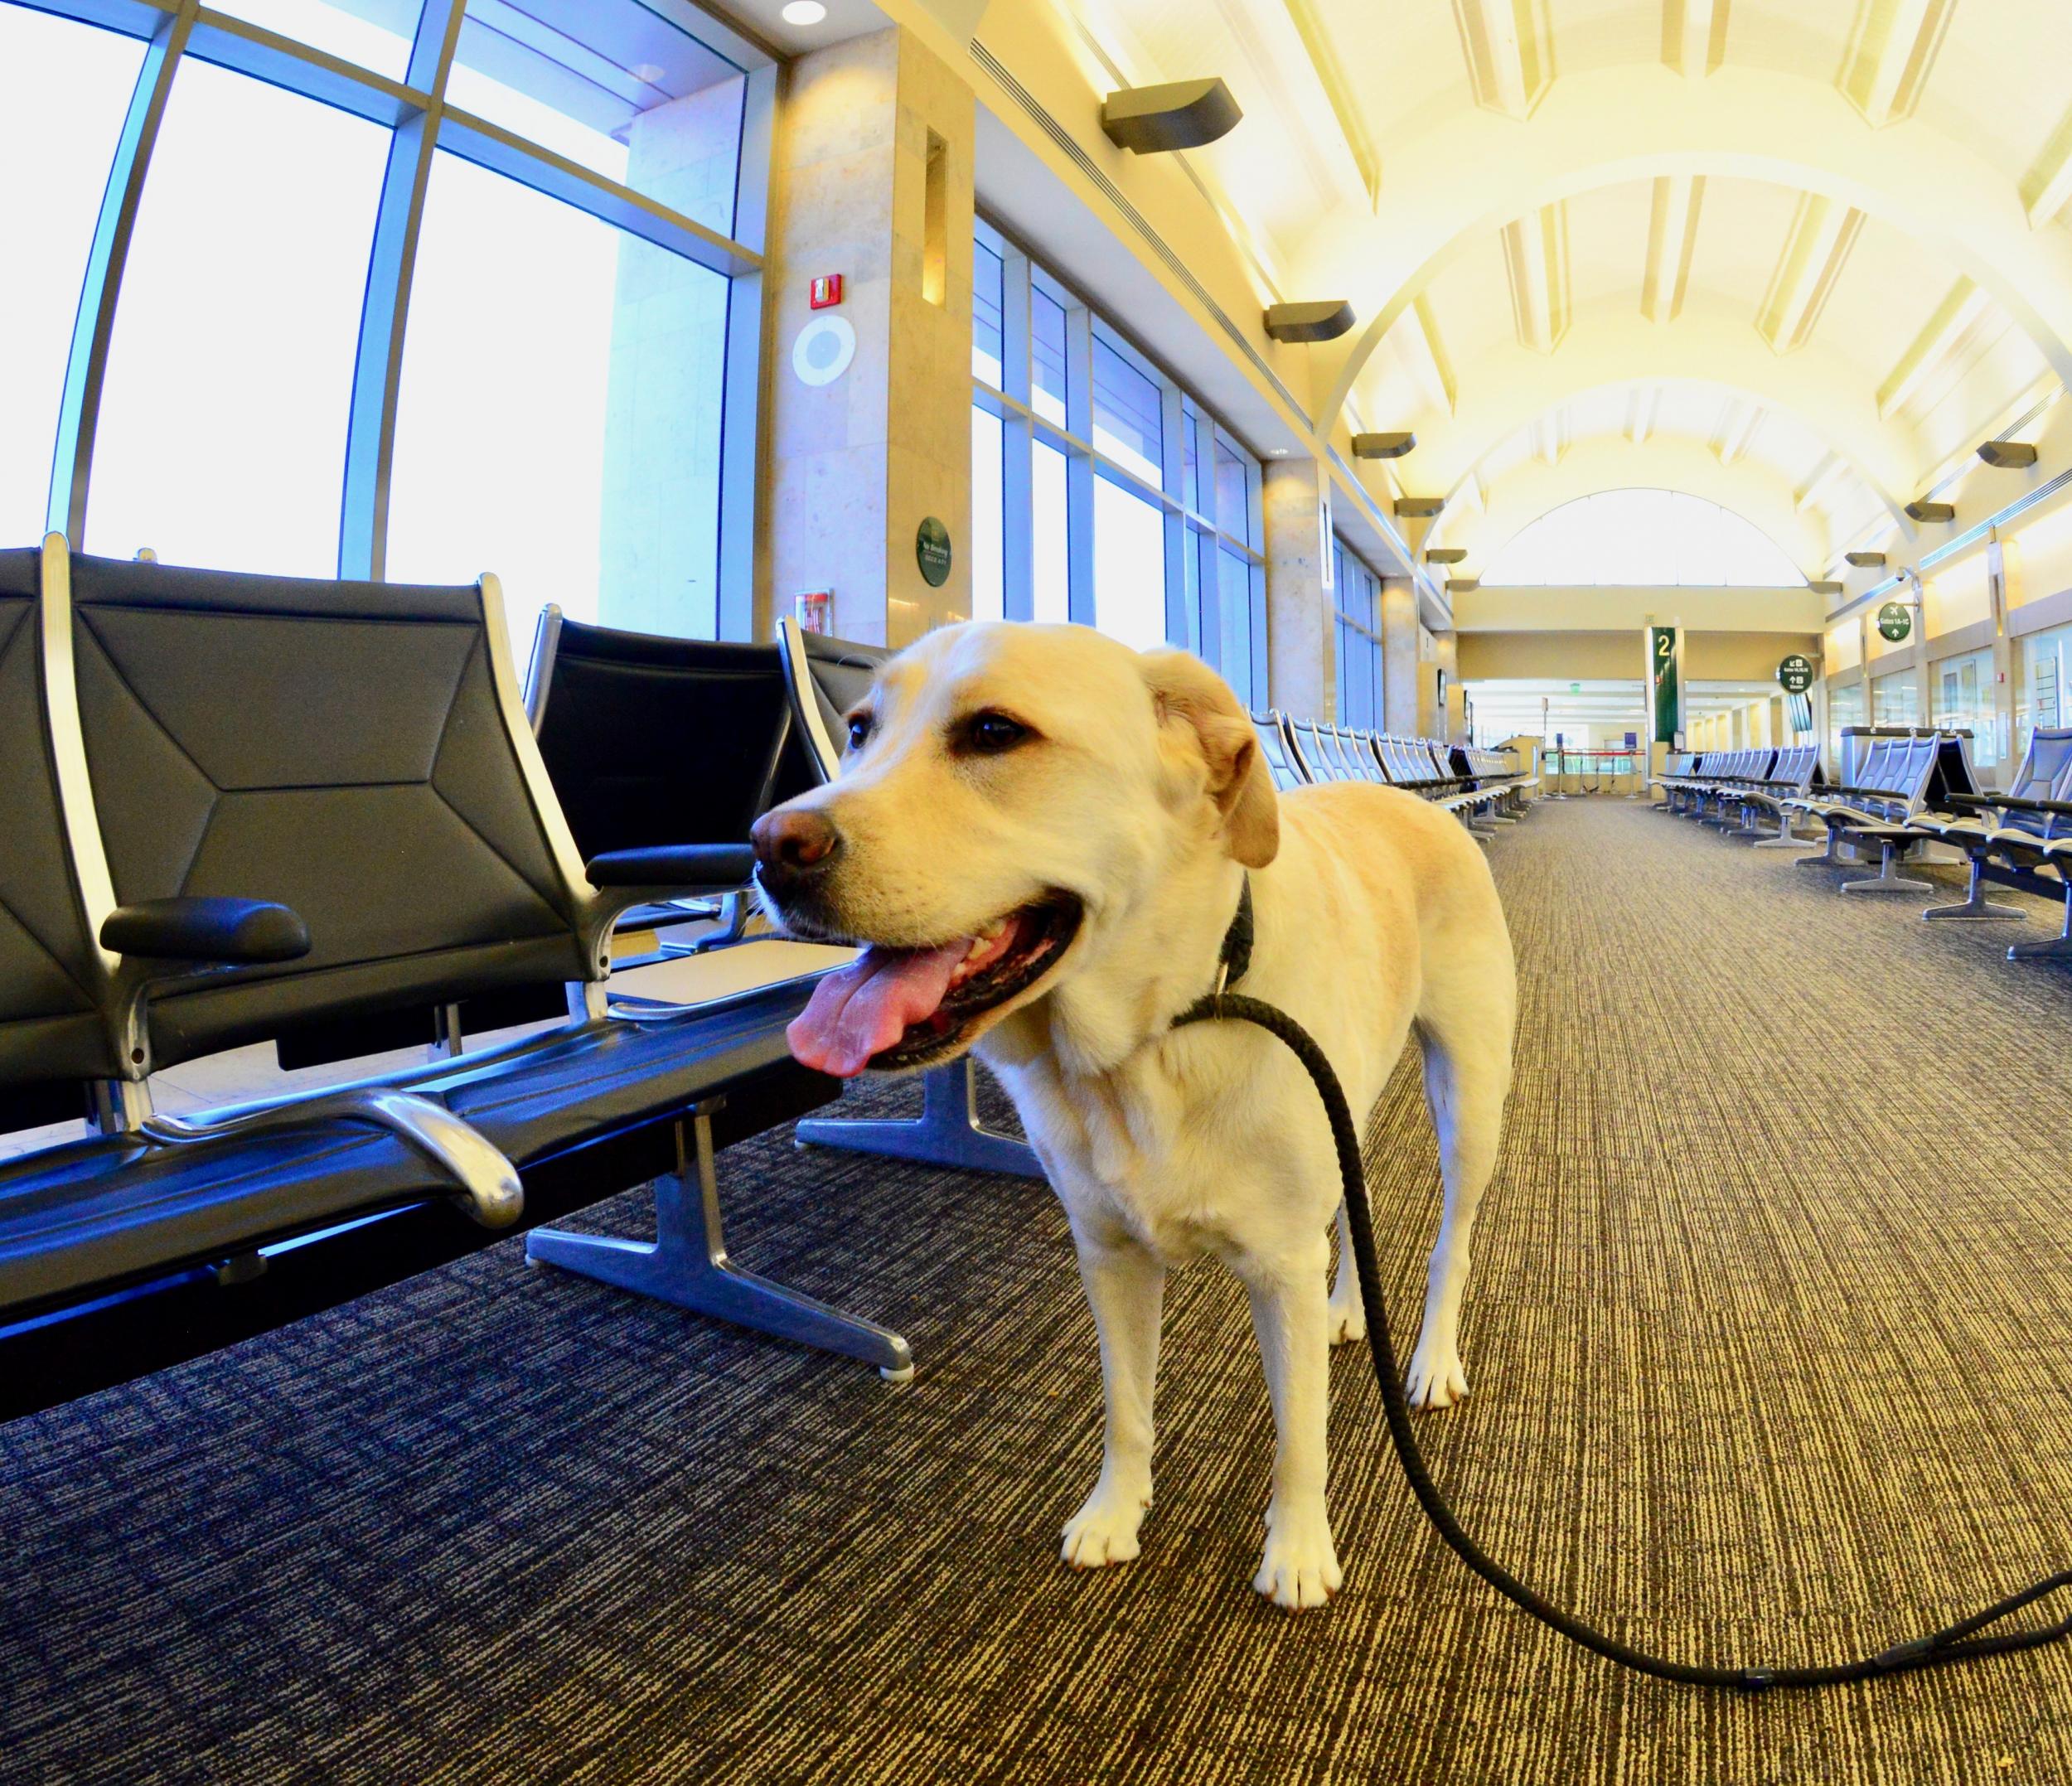 Labrador retriever at the airport